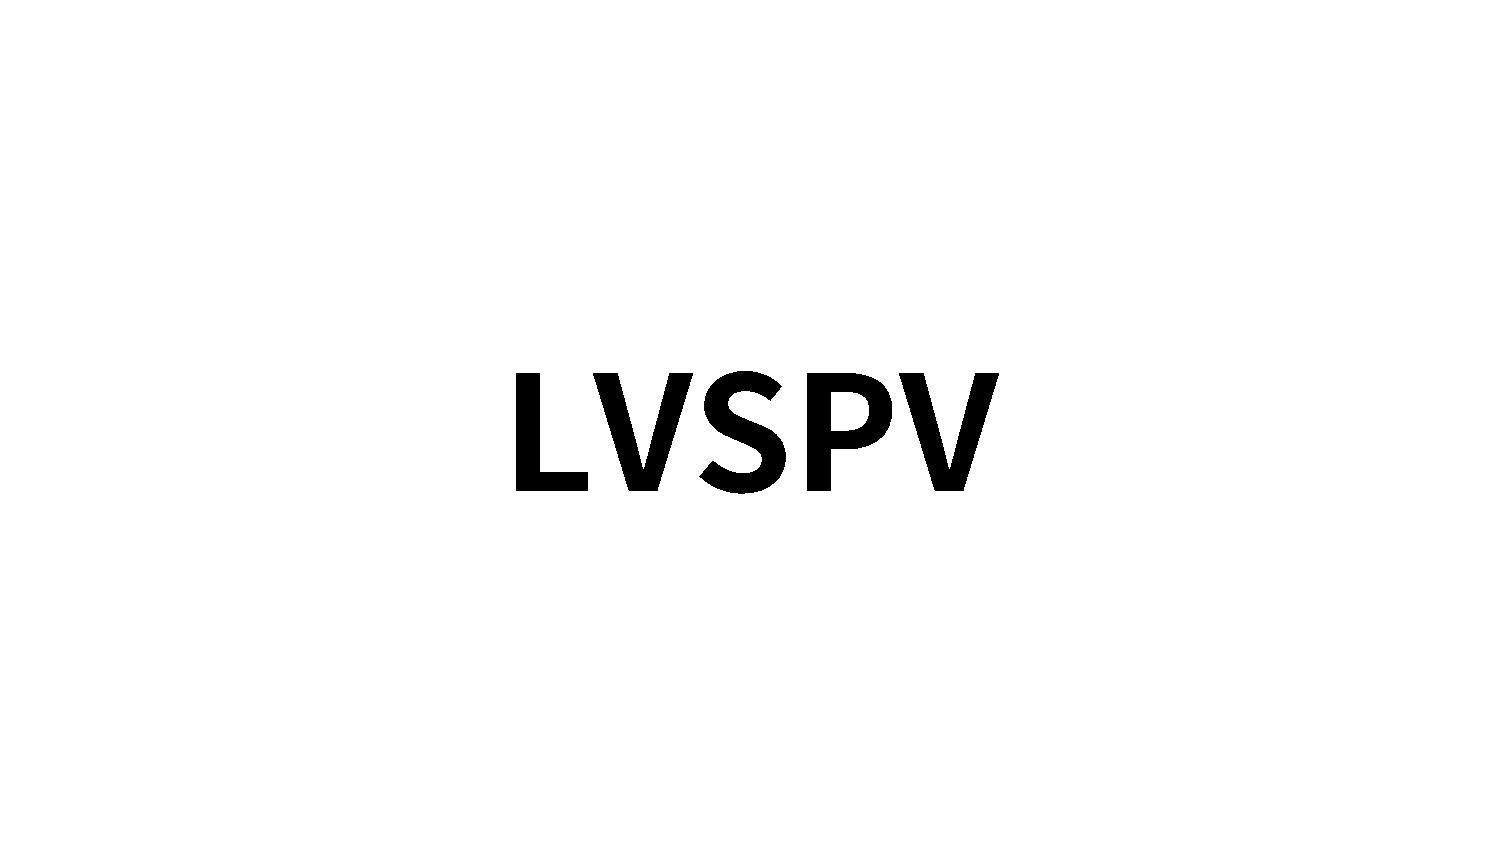 LVSPV